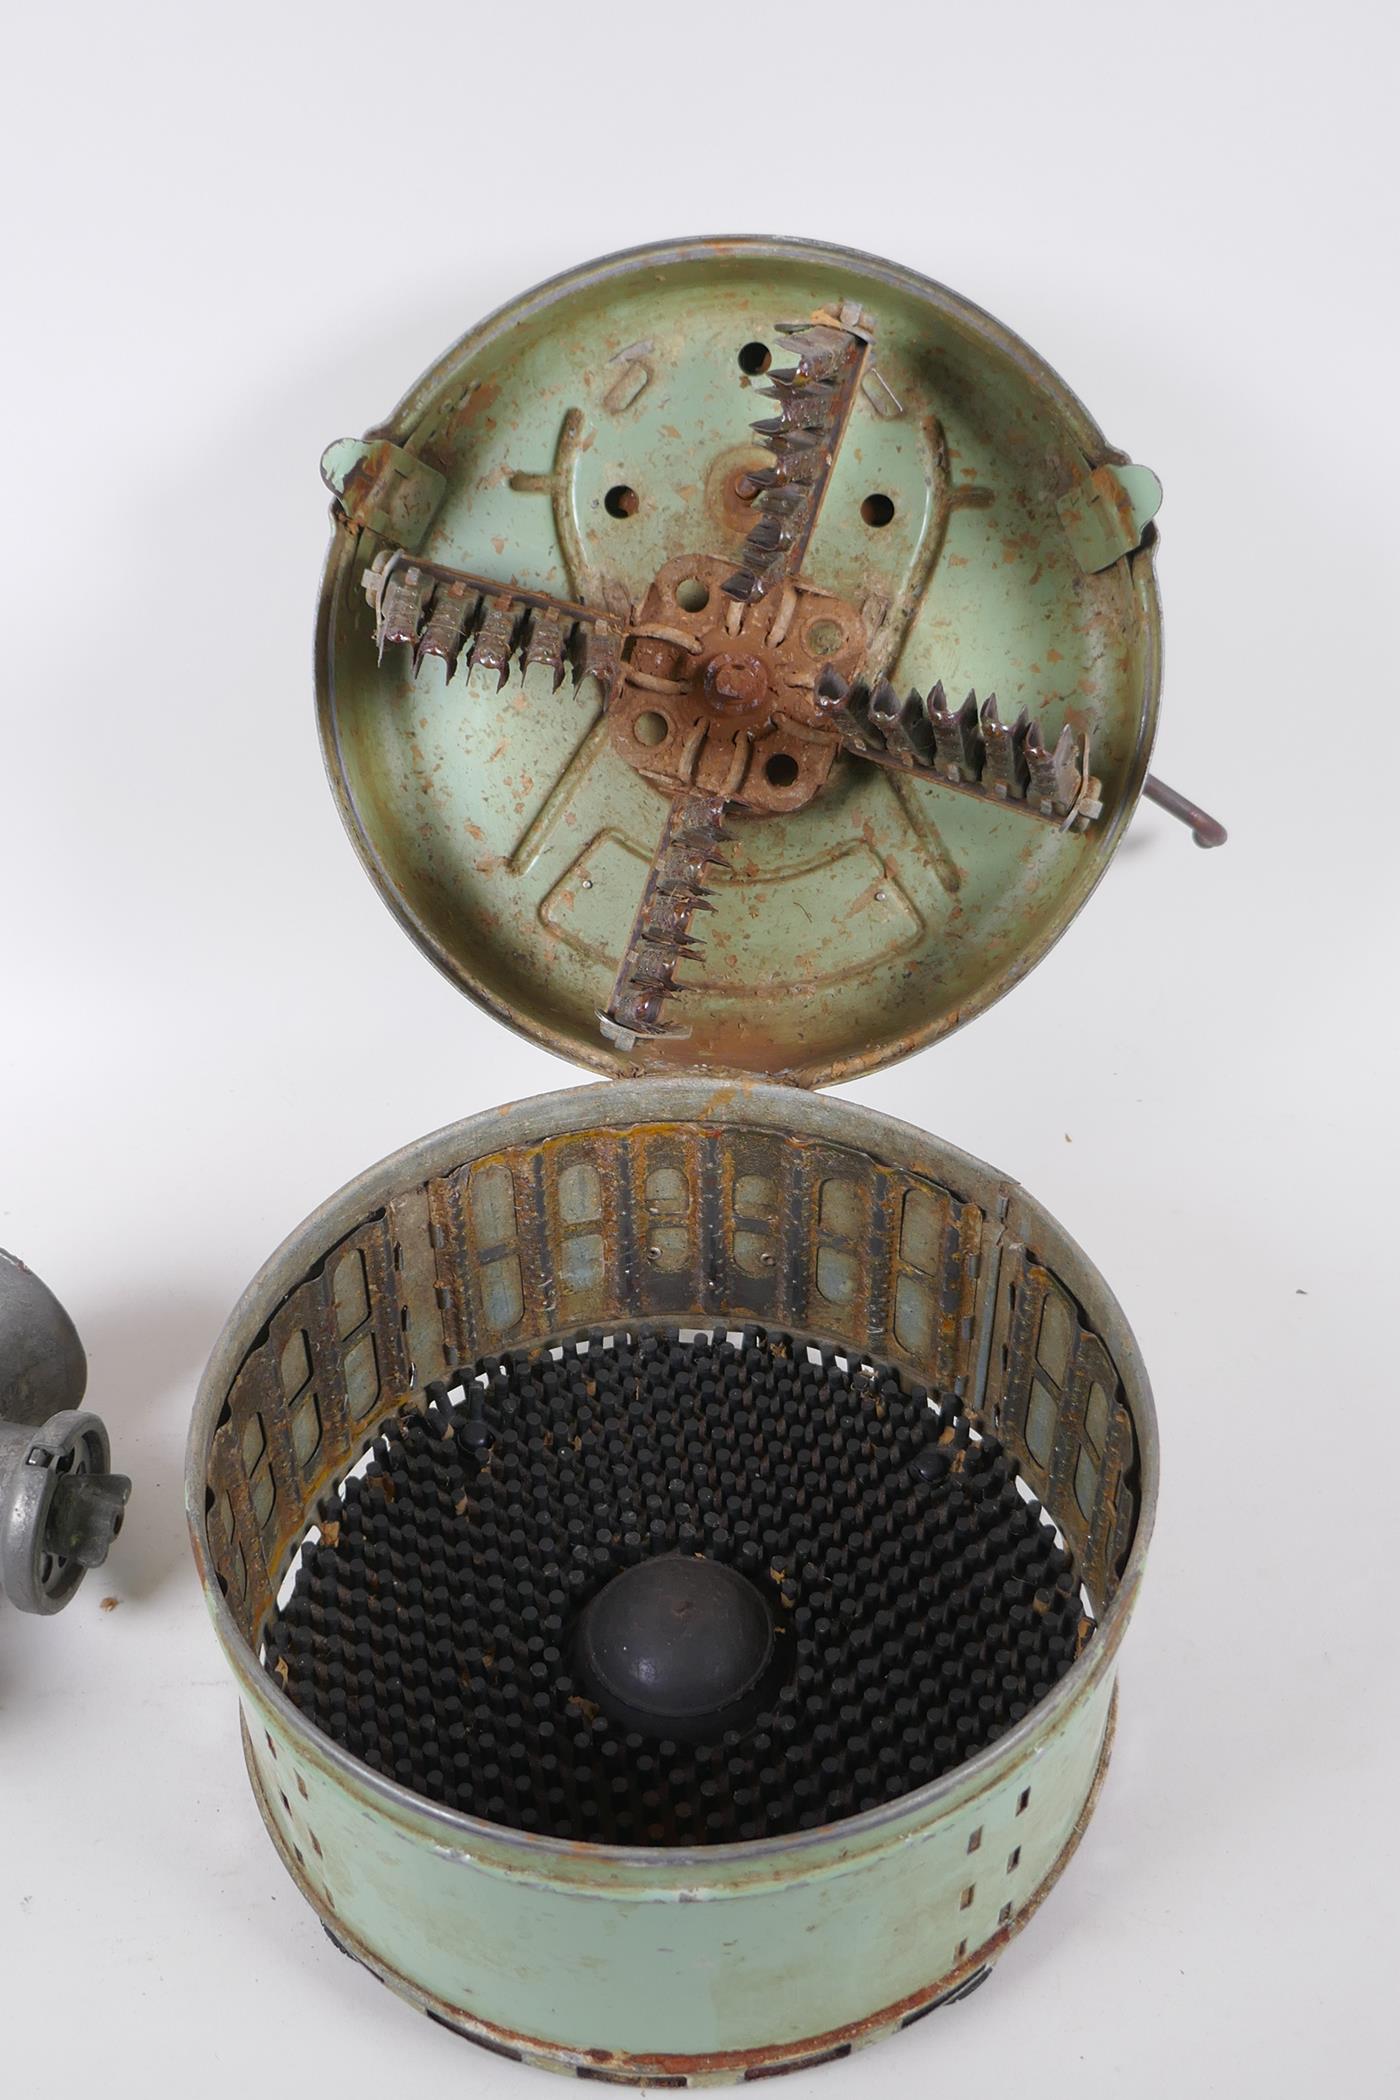 A vintage French Legumex mechanical potato peeler, and a British Spong mincer/grinder, peeler 23cm - Image 3 of 6